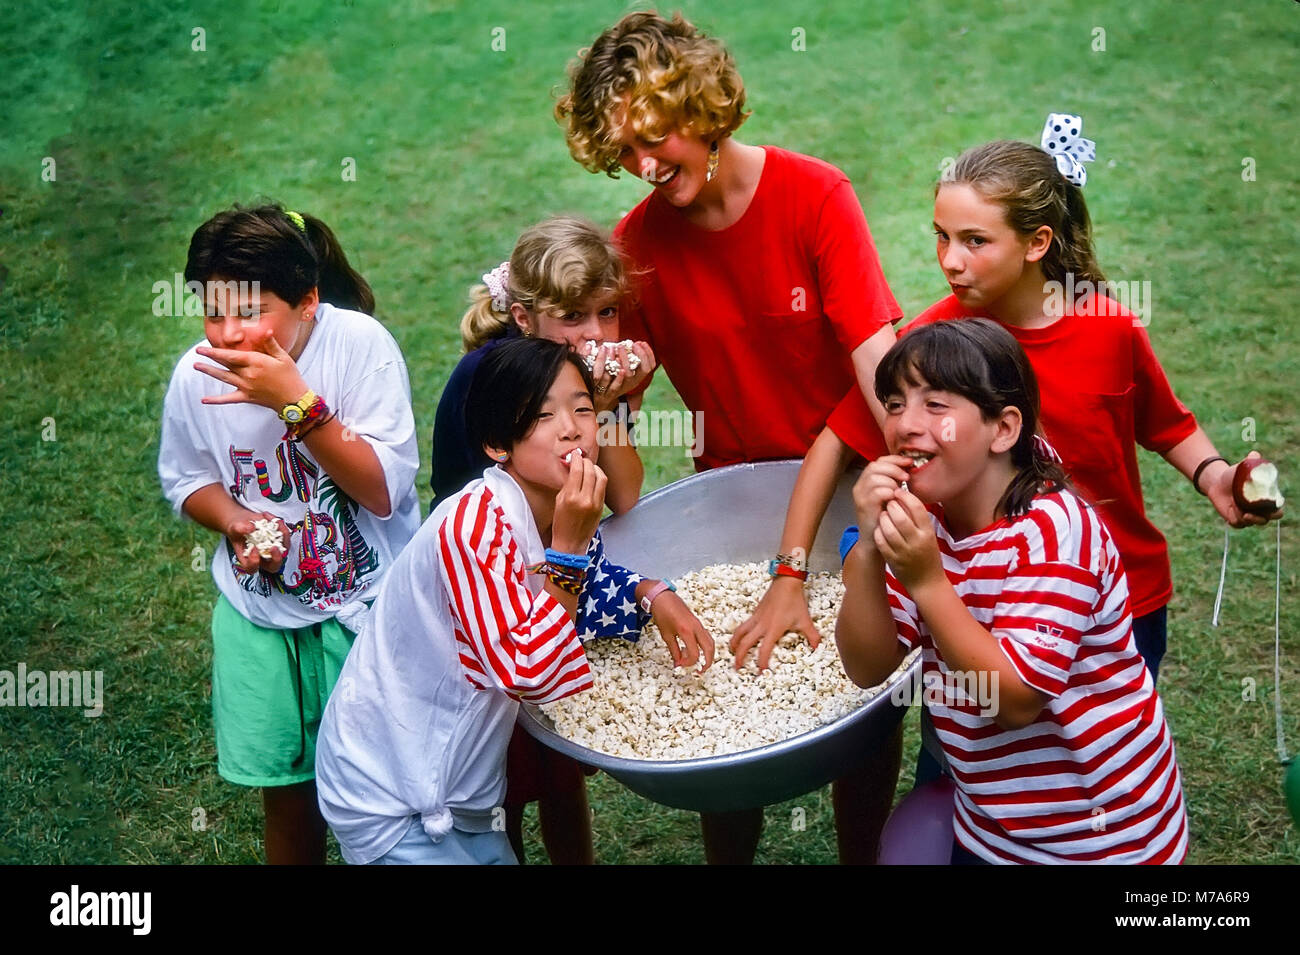 Happy girl les enfants mangent du popcorn à partir d'un grand bassin avec leur conseiller à un camp d'été filles dans le Vermont, USA Banque D'Images